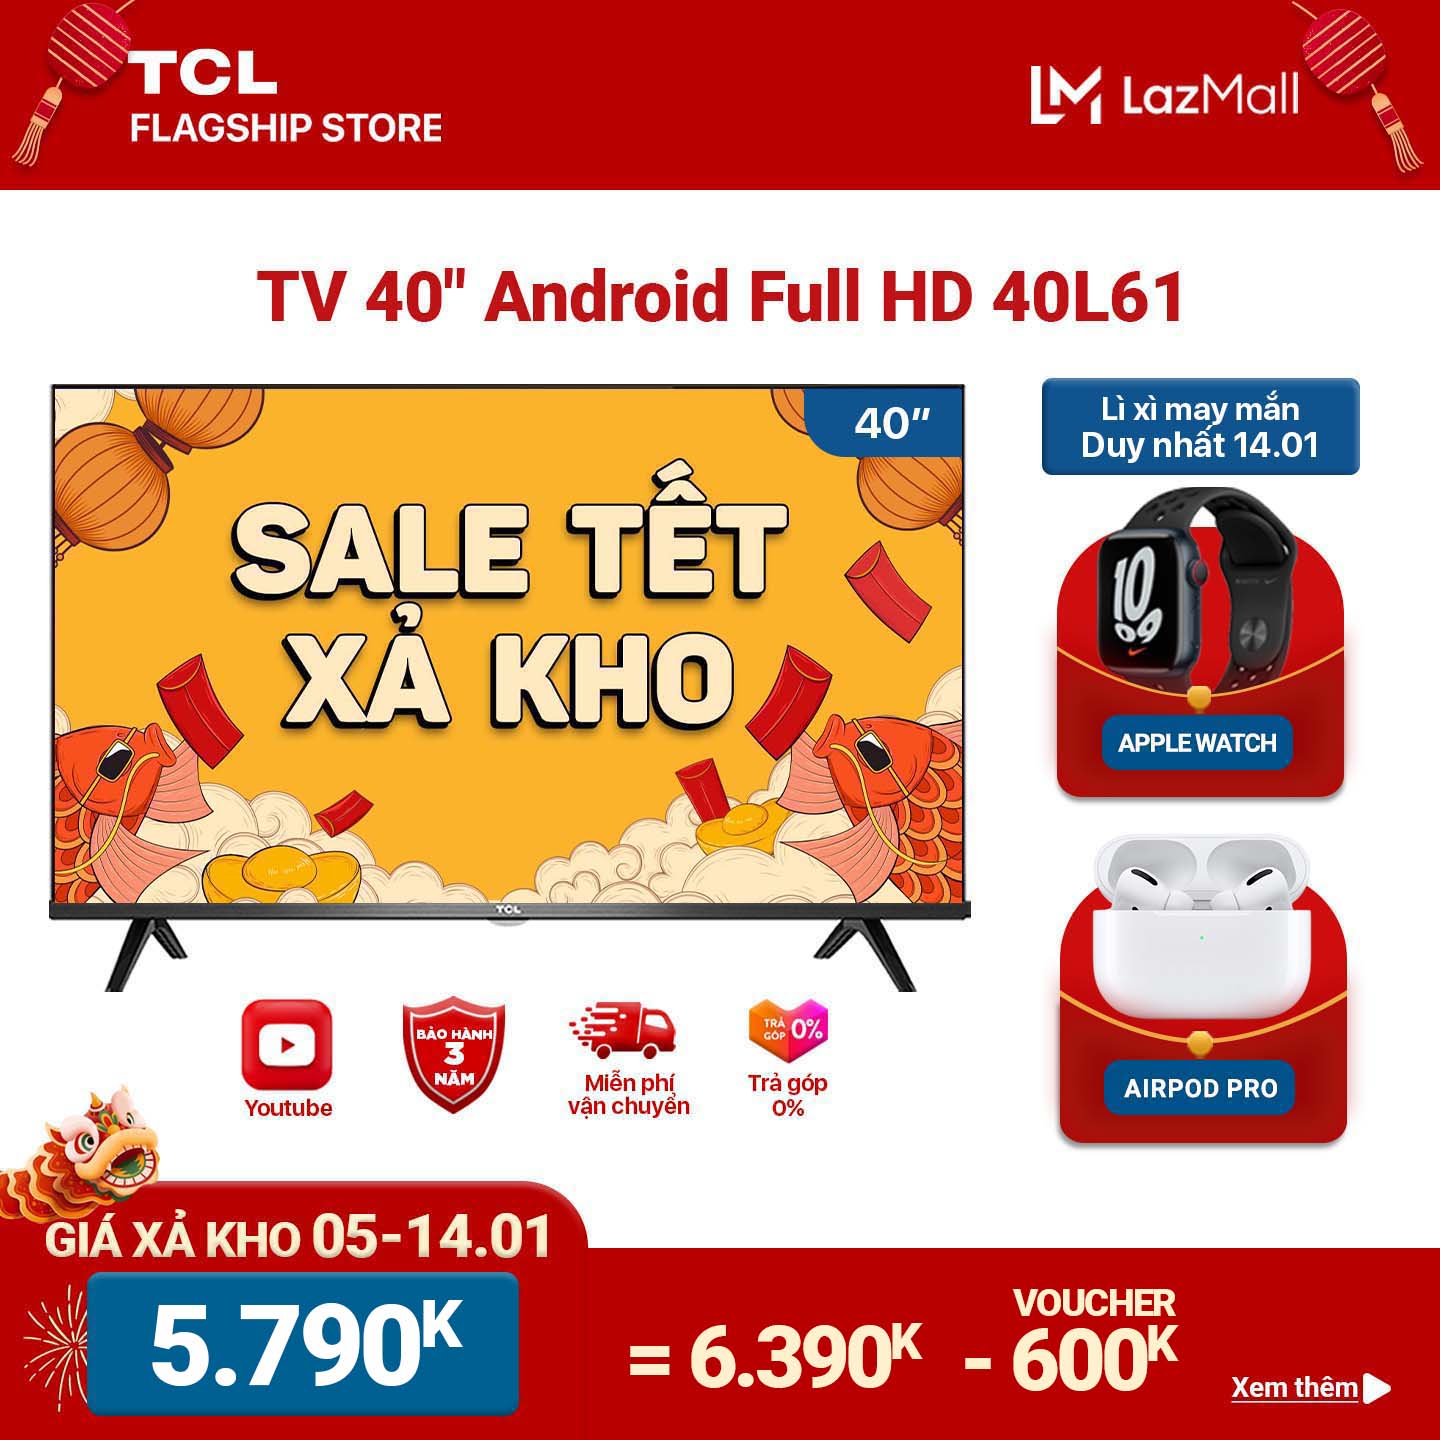 [GIÁ SỐC 5.790K] [Trả góp 0%]Smart TV TCL Android 8.0 40 inch Full HD .wifi - 40L61 - HDR Dolby Chromecast T-cast AI+IN. Màn hình tràn viền - Tivi giá rẻ chất lượng - Bảo hành 3 năm